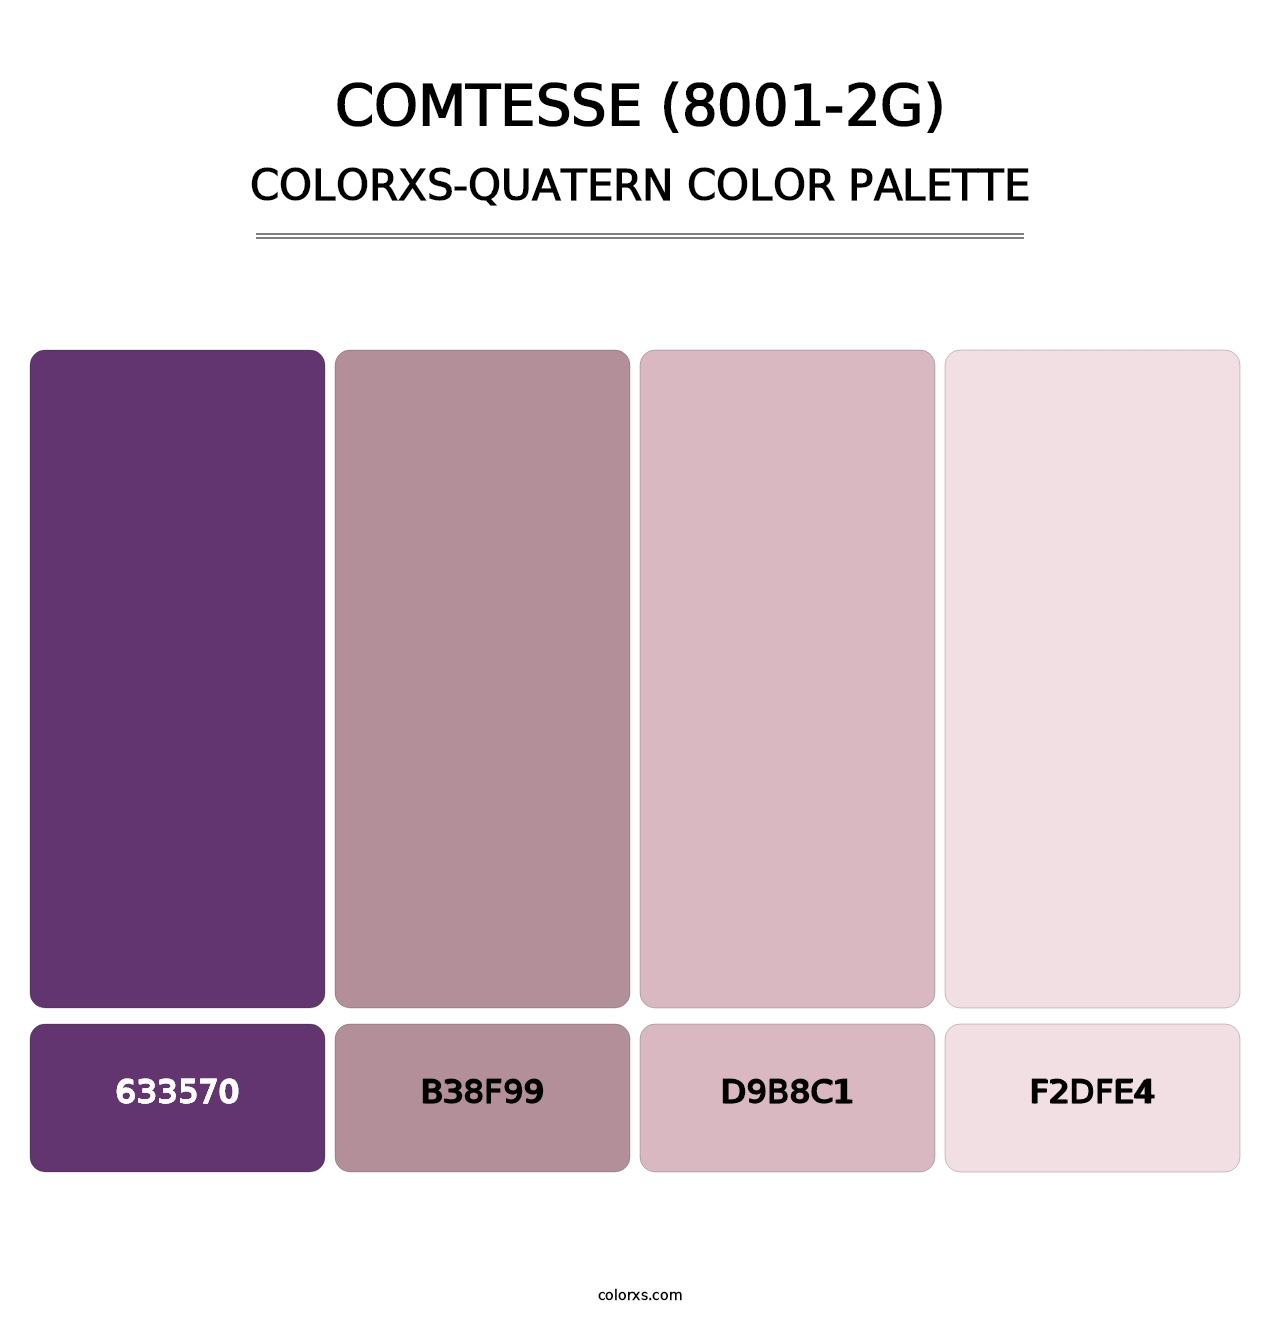 Comtesse (8001-2G) - Colorxs Quatern Palette